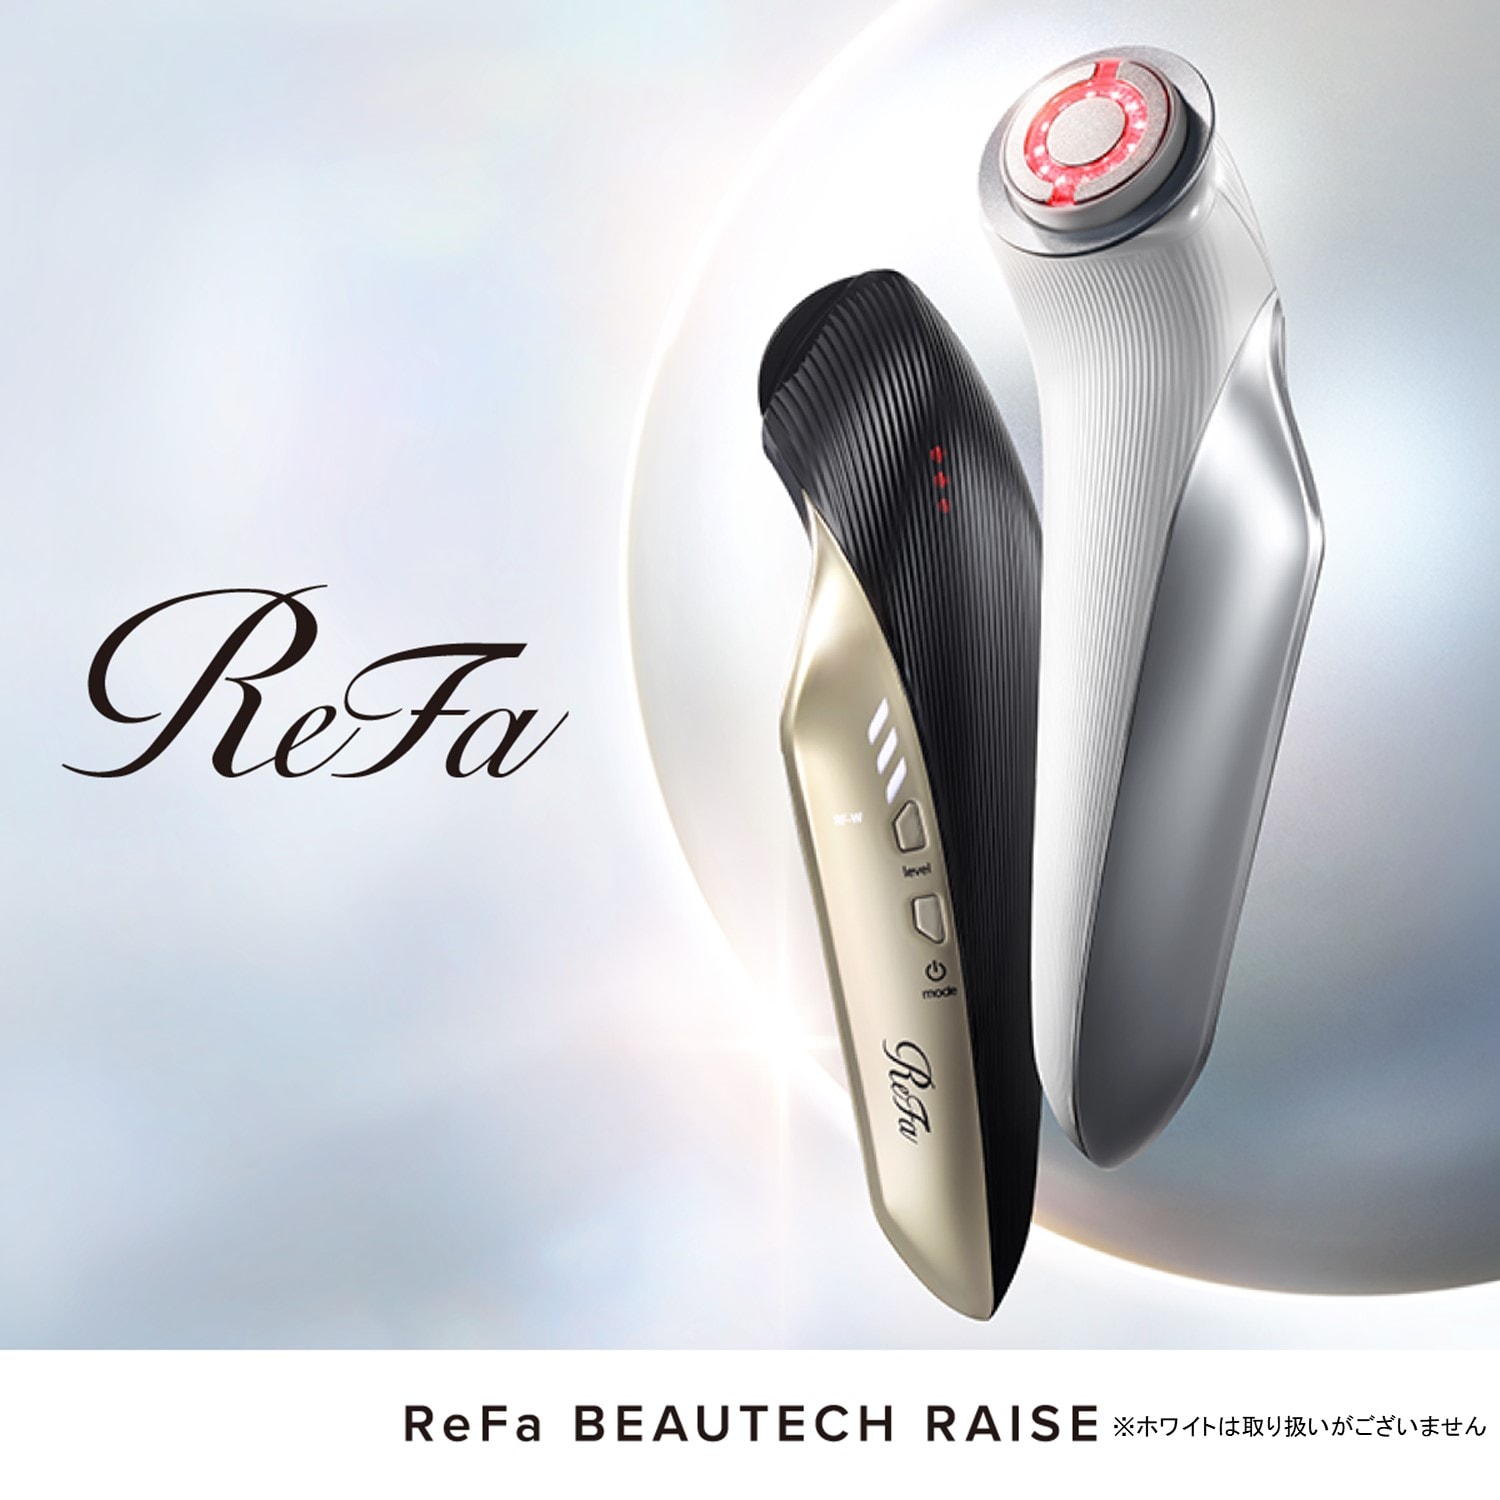 Refa Beautech Raise 美顔器